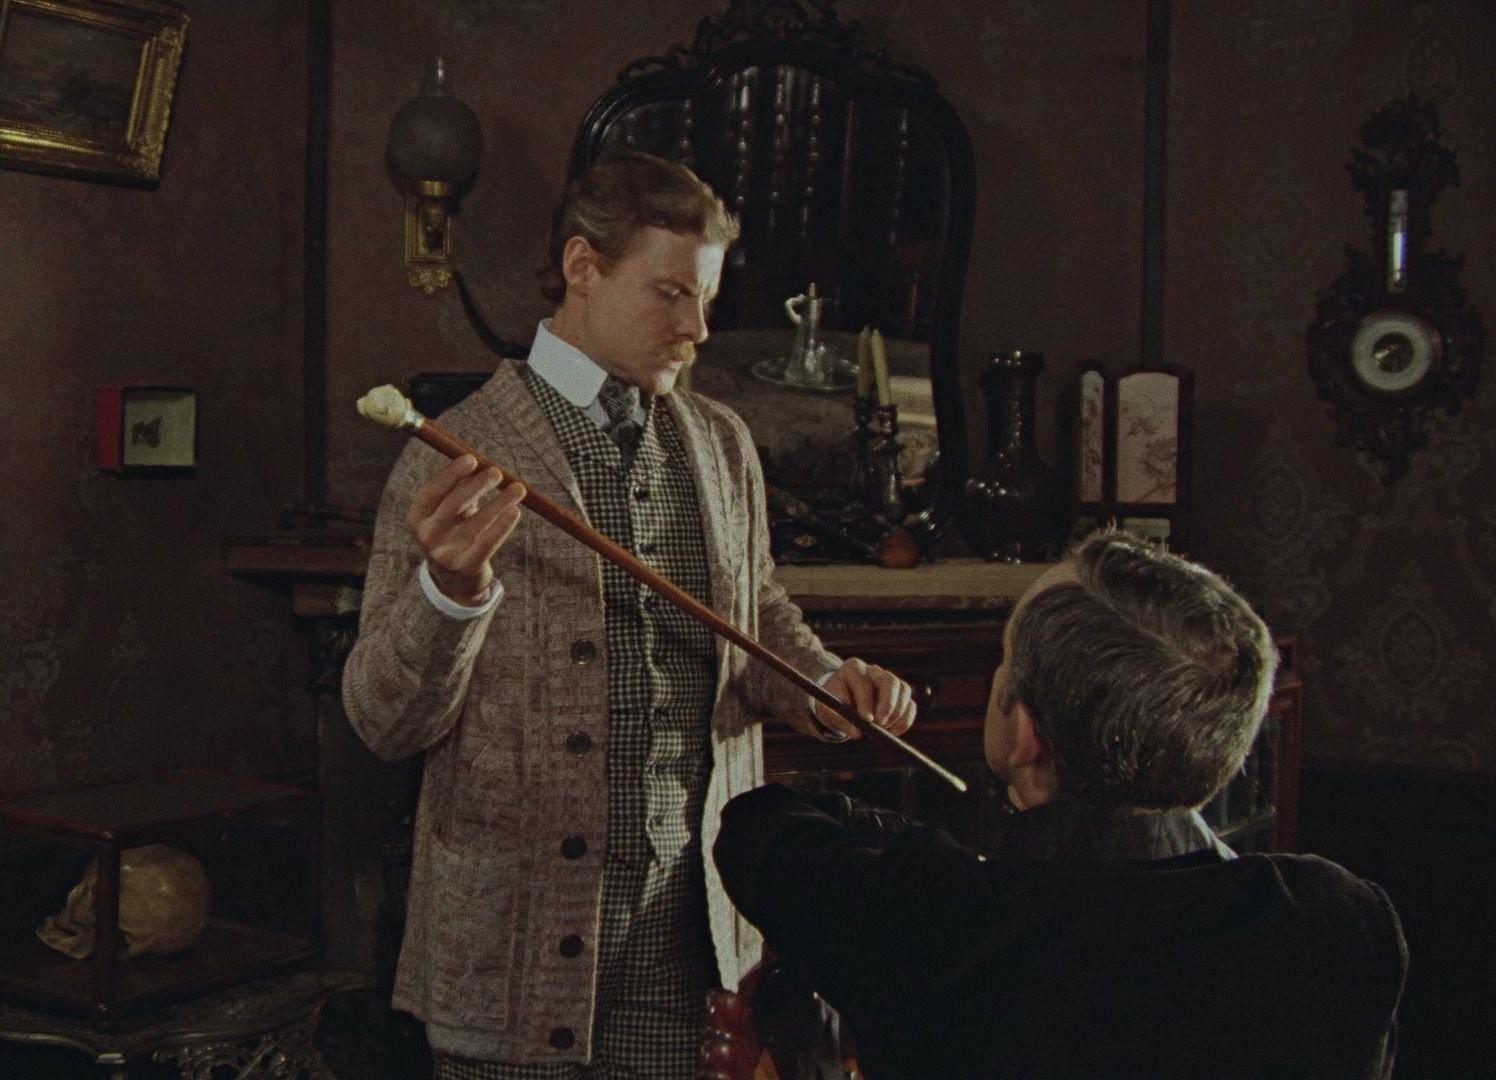 Кадры из фильма шерлок холмс и доктор ватсон фото